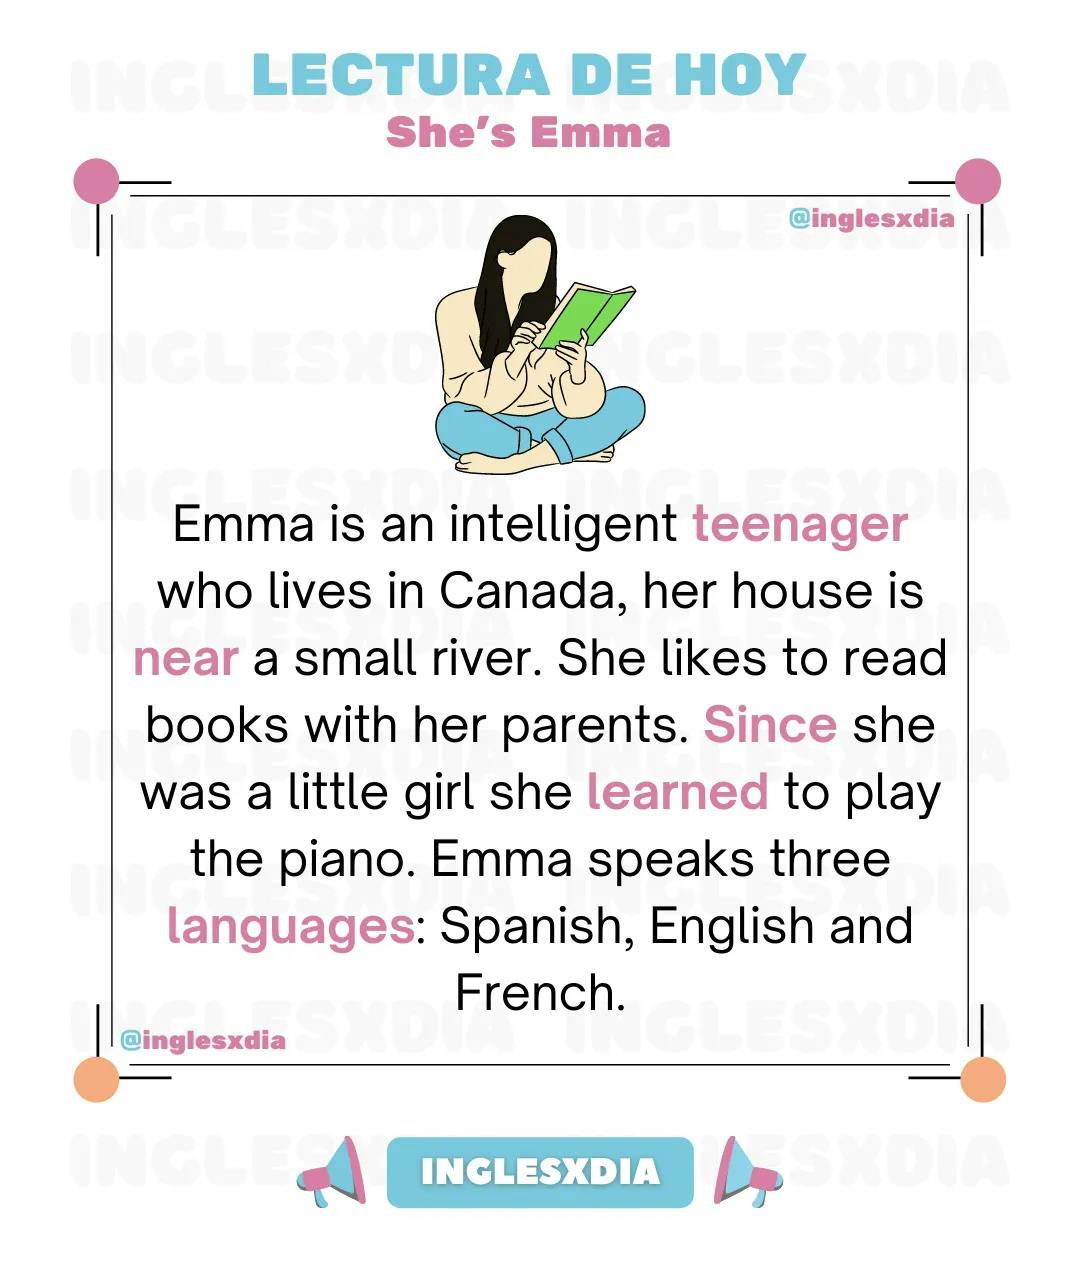 She's Emma